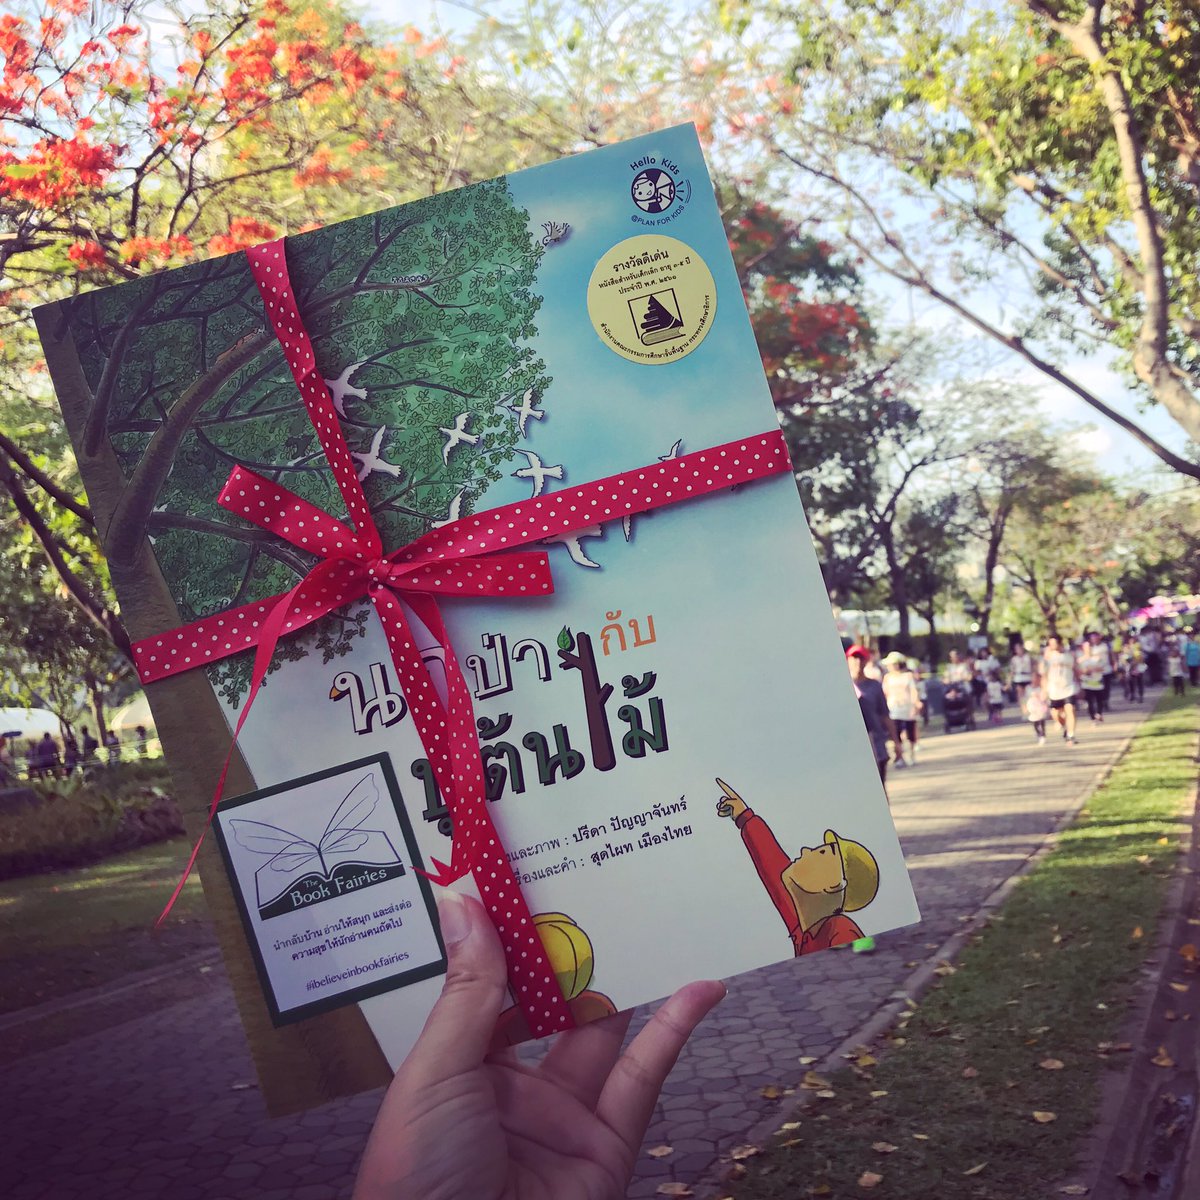 มีใครเจอคุณปู่ต้นไม้ไหมเอ่ย?

#ibelieveinbookfairies #bookfairiesthailand #bookfairiesbangkok 
#bookfairiesworldwide